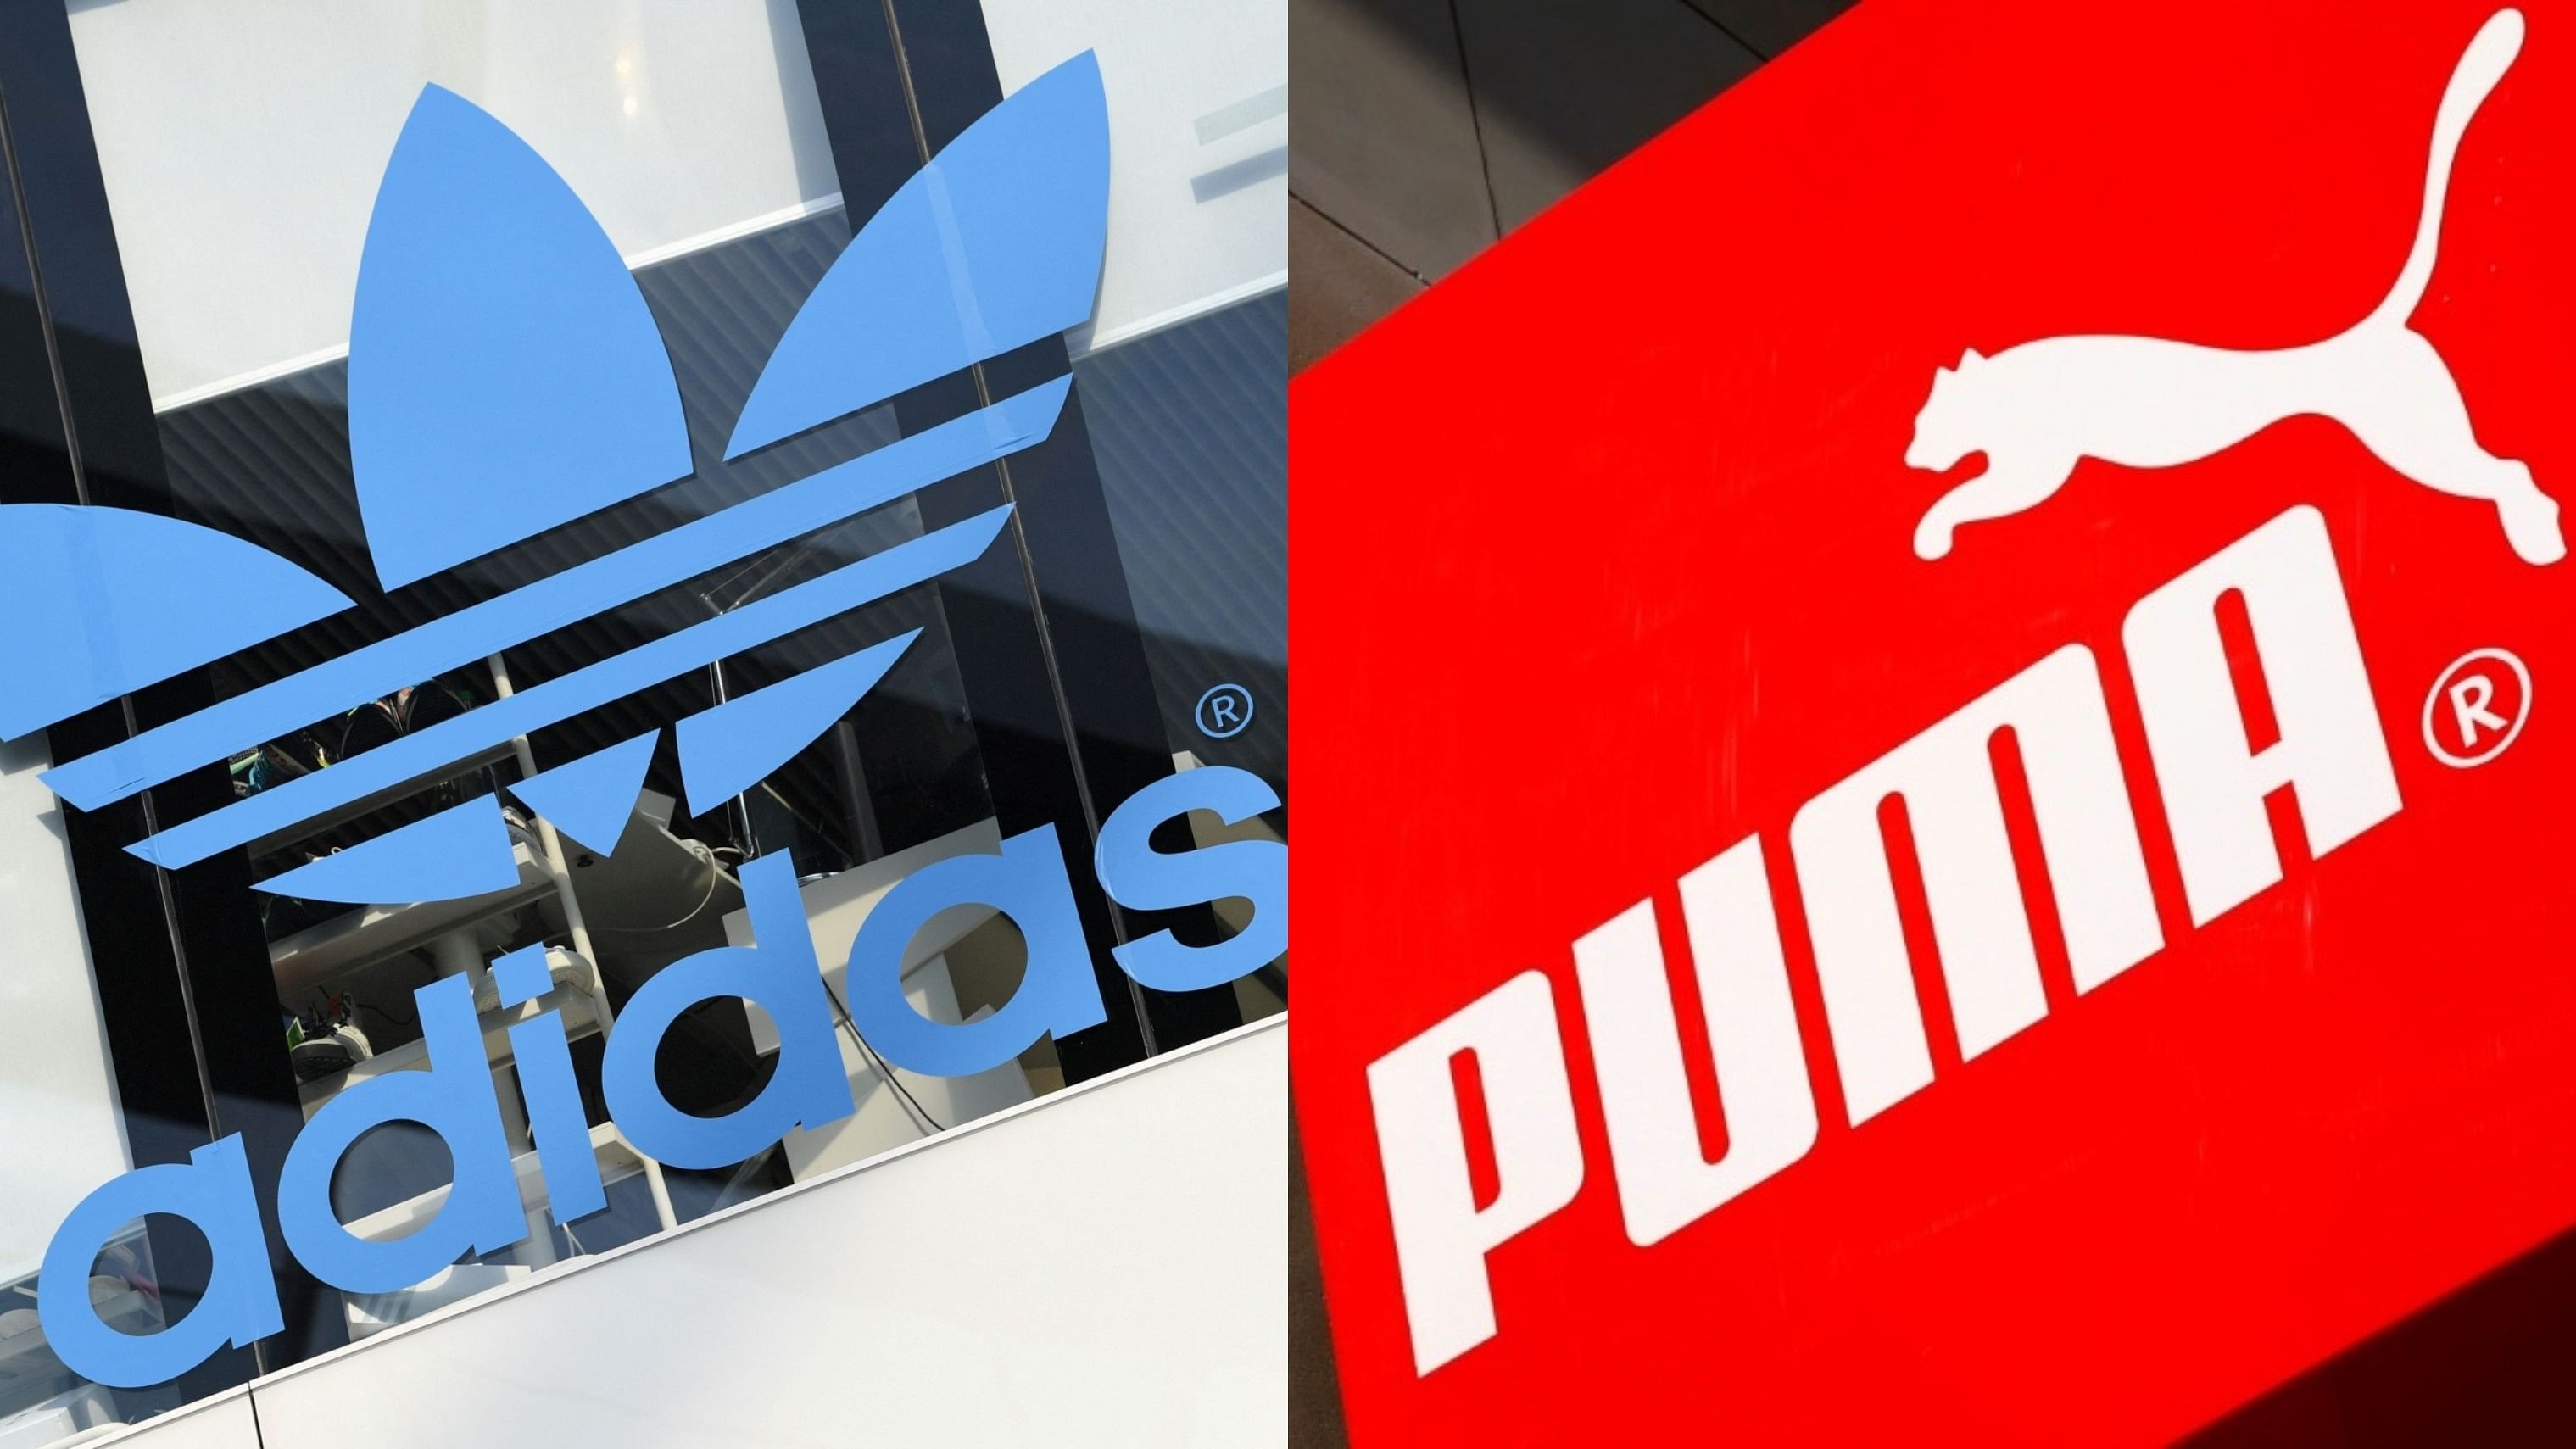 <div class="paragraphs"><p>Representative image of Adidas and Puma logo.</p></div>